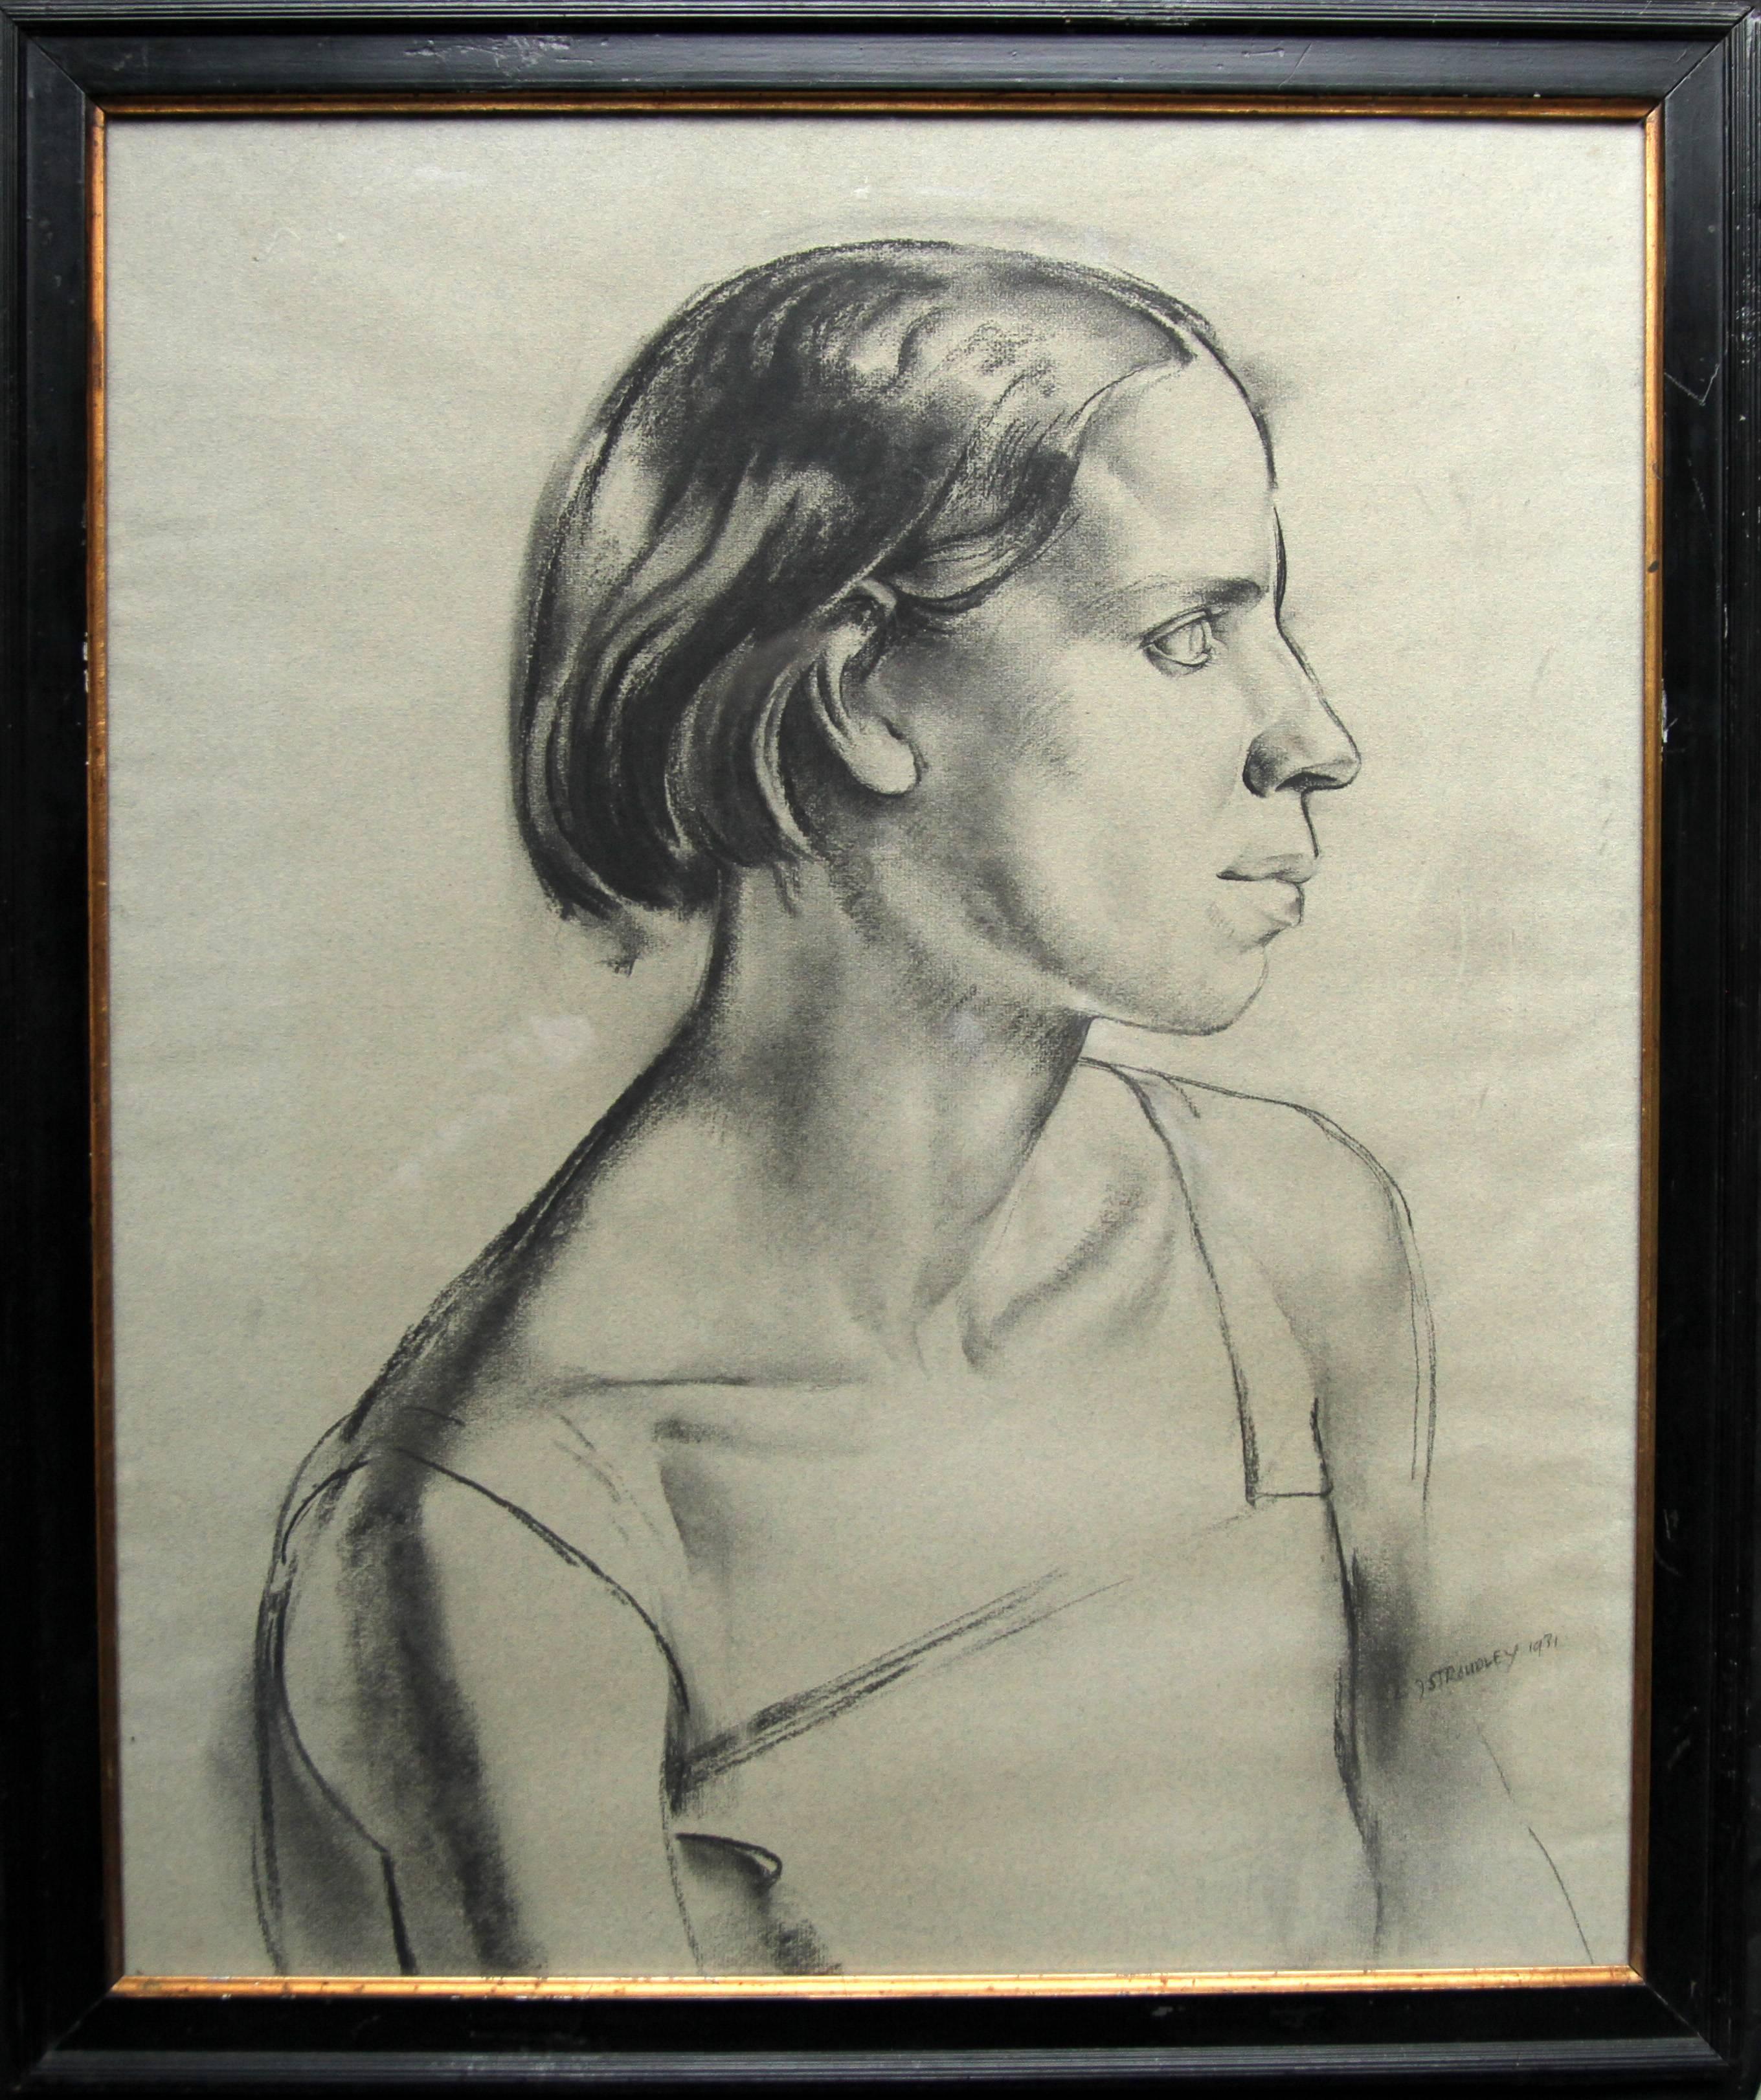 Un grand dessin au fusain et au crayon de l'artiste britannique James Stroudley. Exécuté en 1931, il s'agit d'un exemple étonnant de portrait Art déco des années 1930. Très forte et audacieuse, elle représente le portrait d'une jeune femme. Elle est